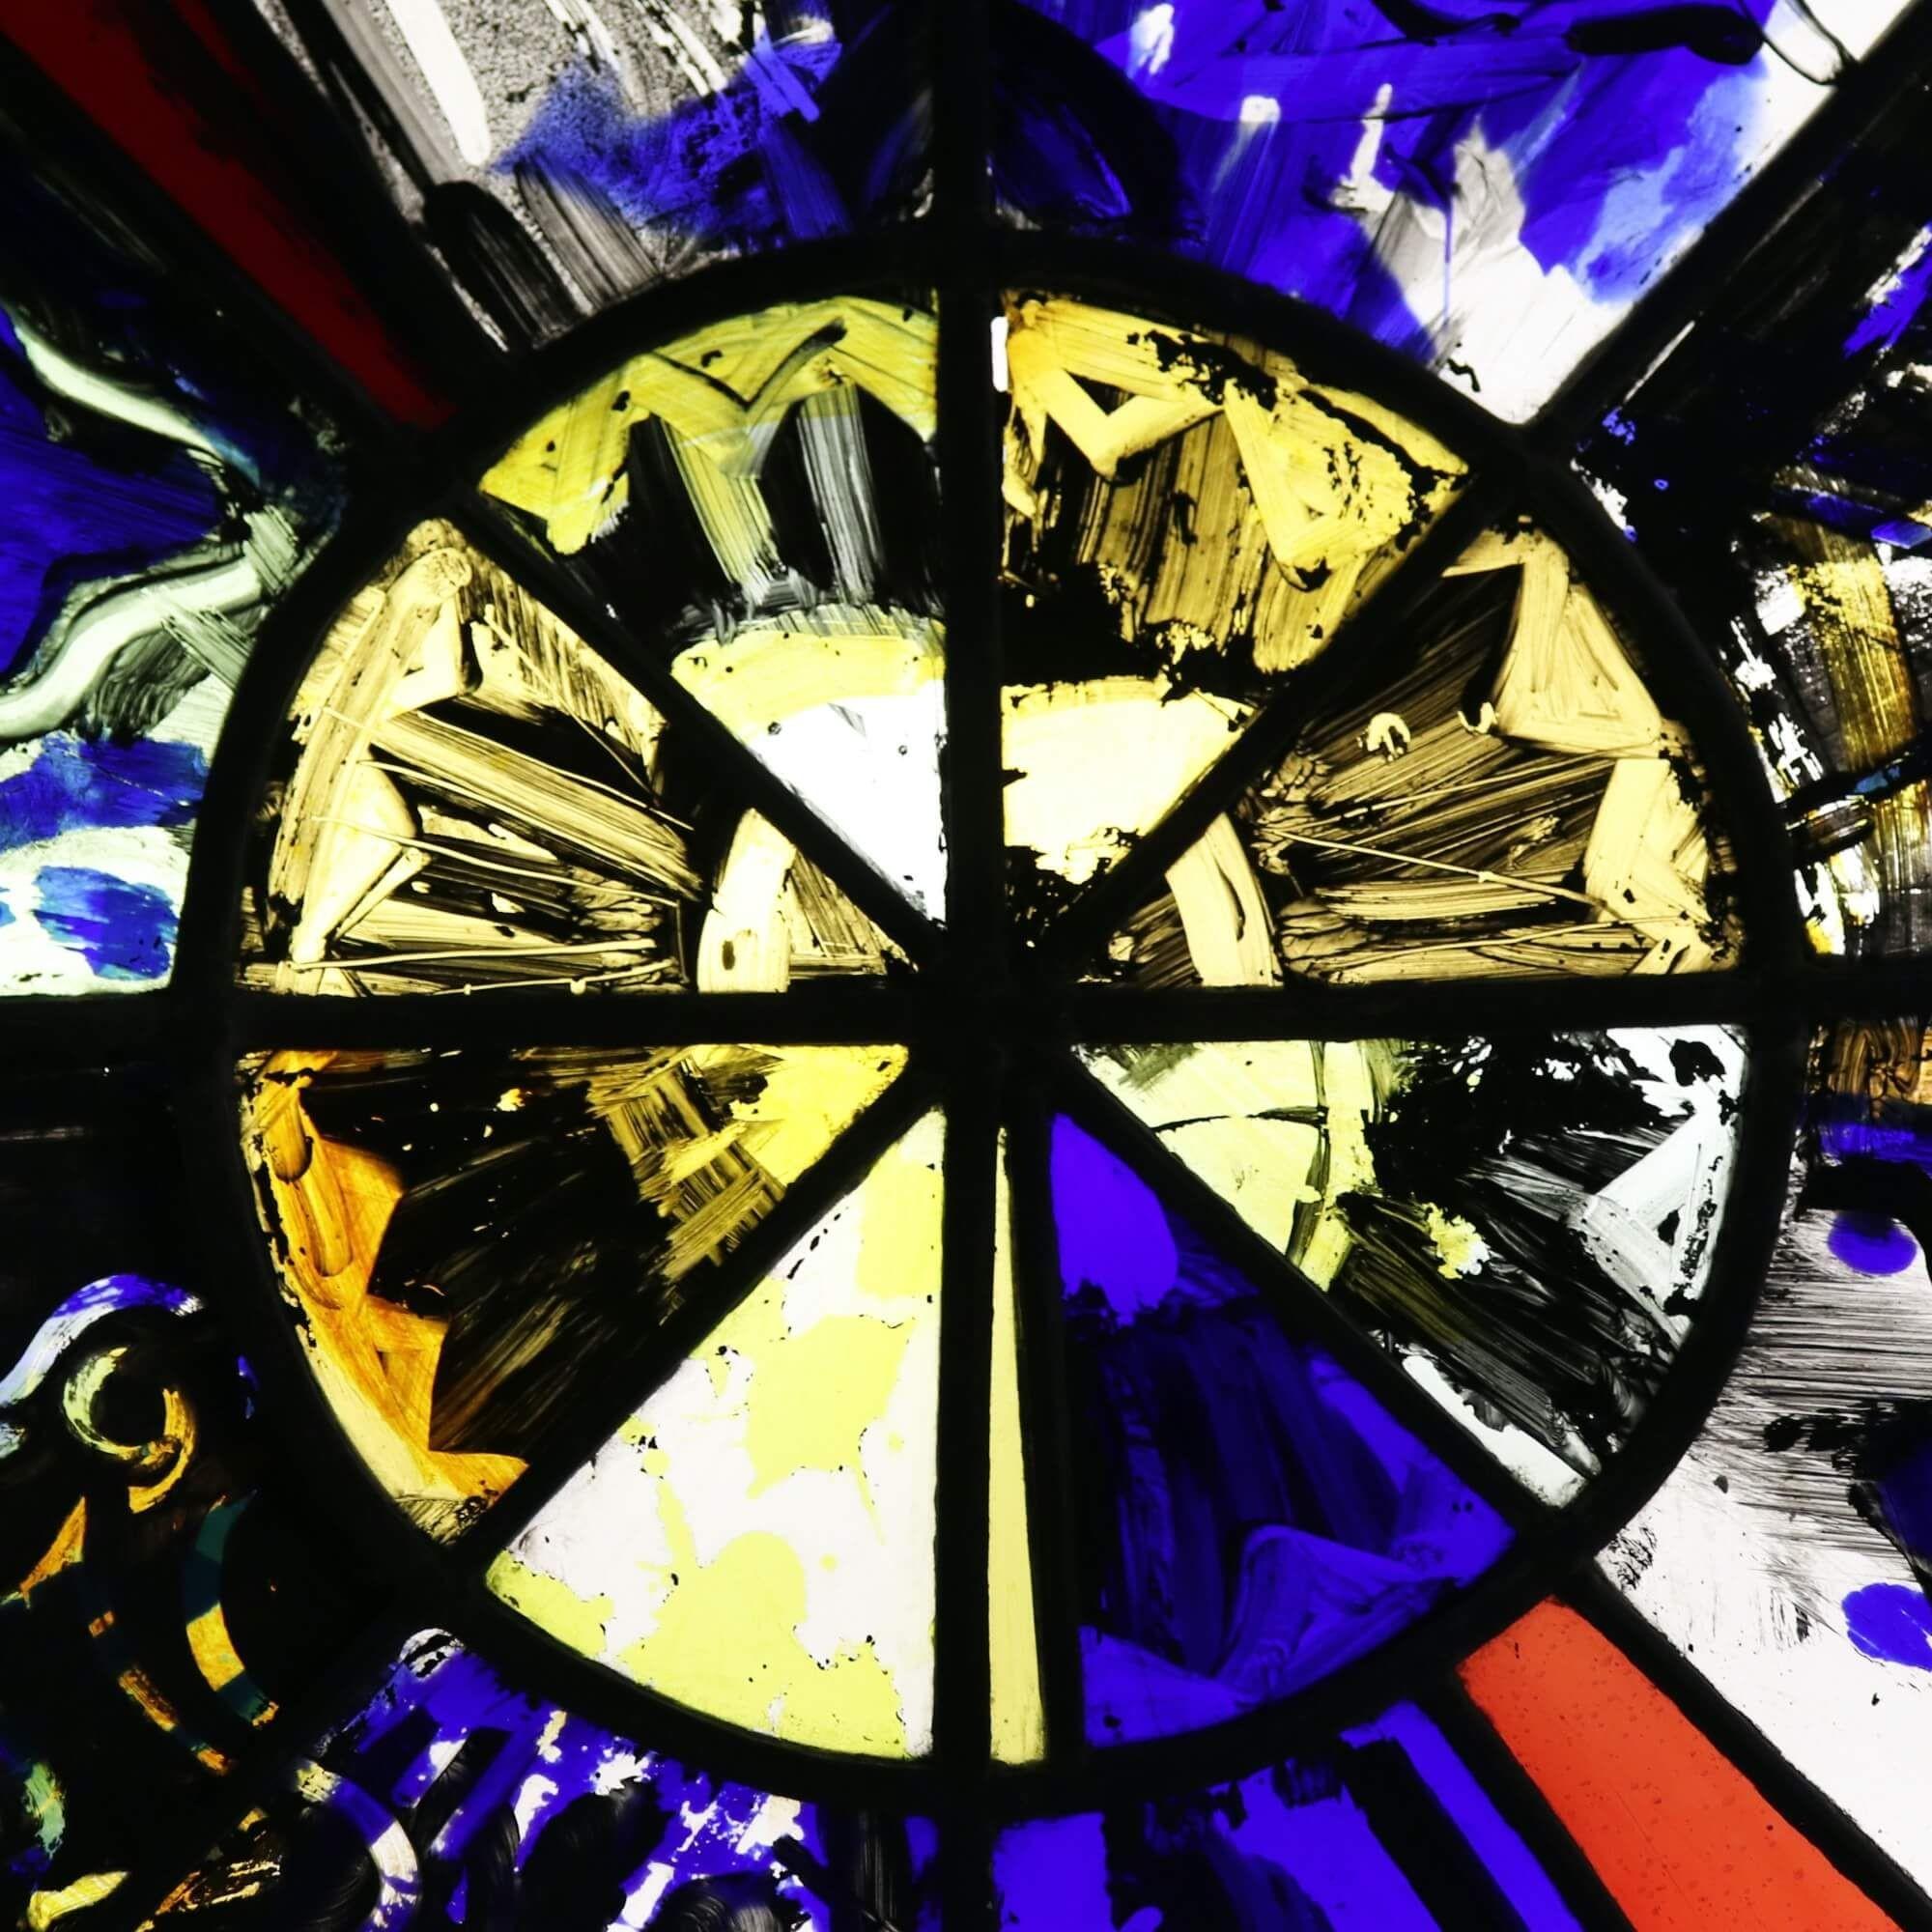 Ein modernes Buntglasfenster aus dem Studio von Patrick Reyntiens (1925-2021). Diese dem Künstler zugeschriebene Glasmalerei zeigt ein sonnenbrustartiges Muster mit abstrakten handgemalten Details, darunter ein scheinbarer Fisch in der unteren